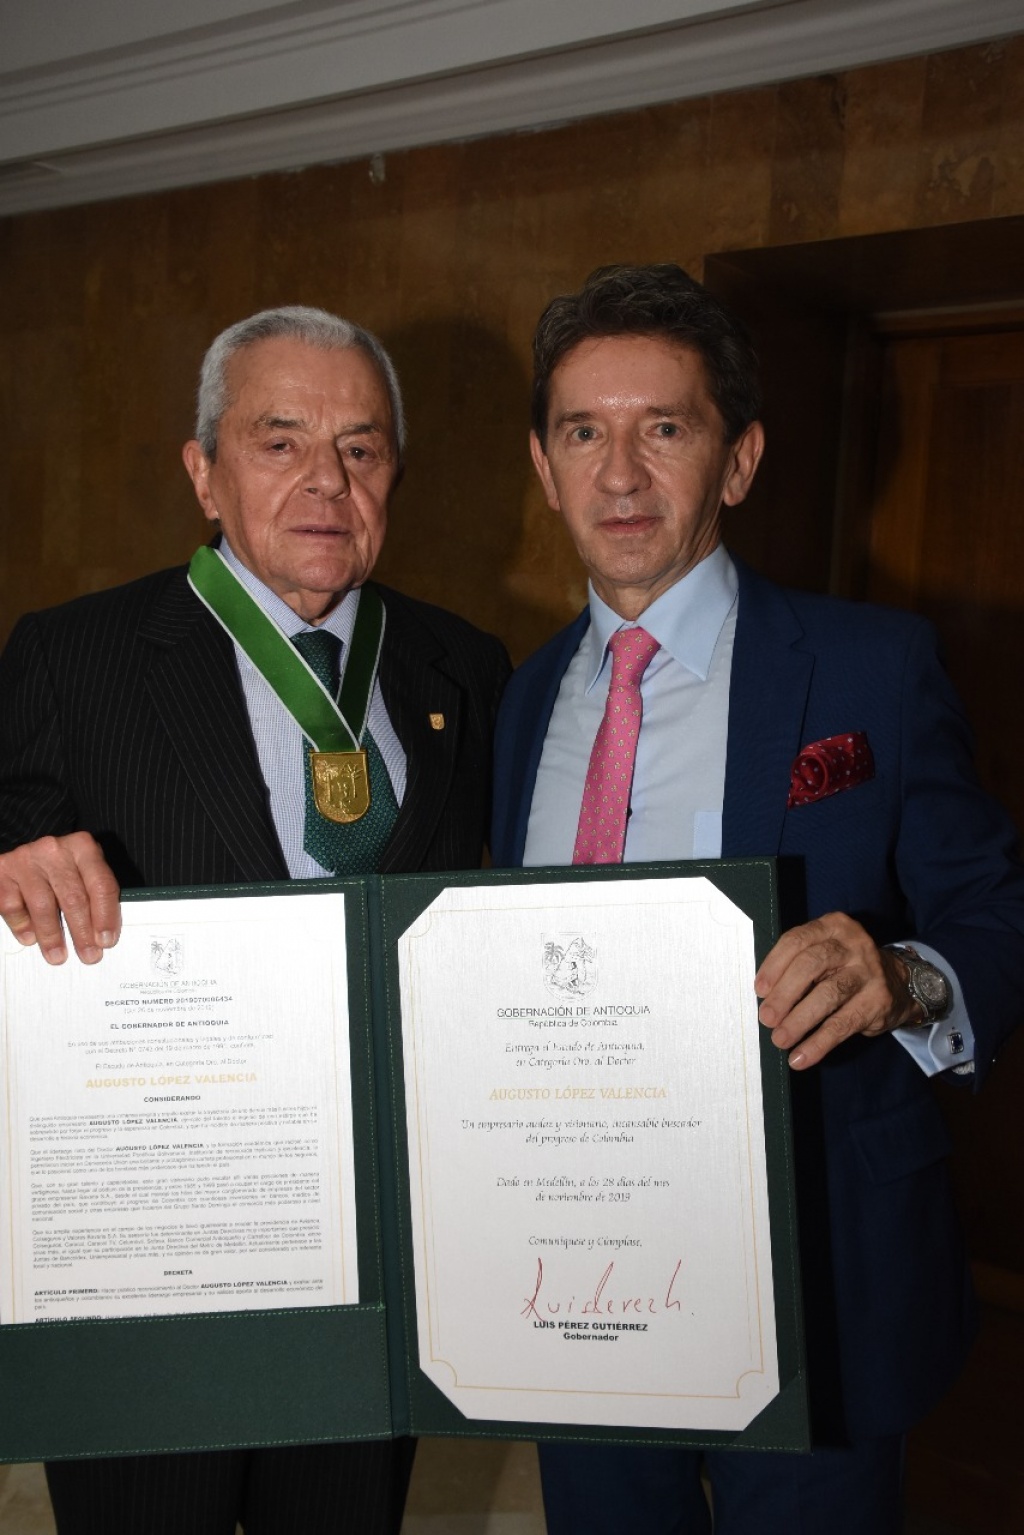 Augusto López Valencia recibió el Escudo de Antioquia Categoría Oro de manos del Gobernador de Antioquia Luis Pérez Gutiérrez